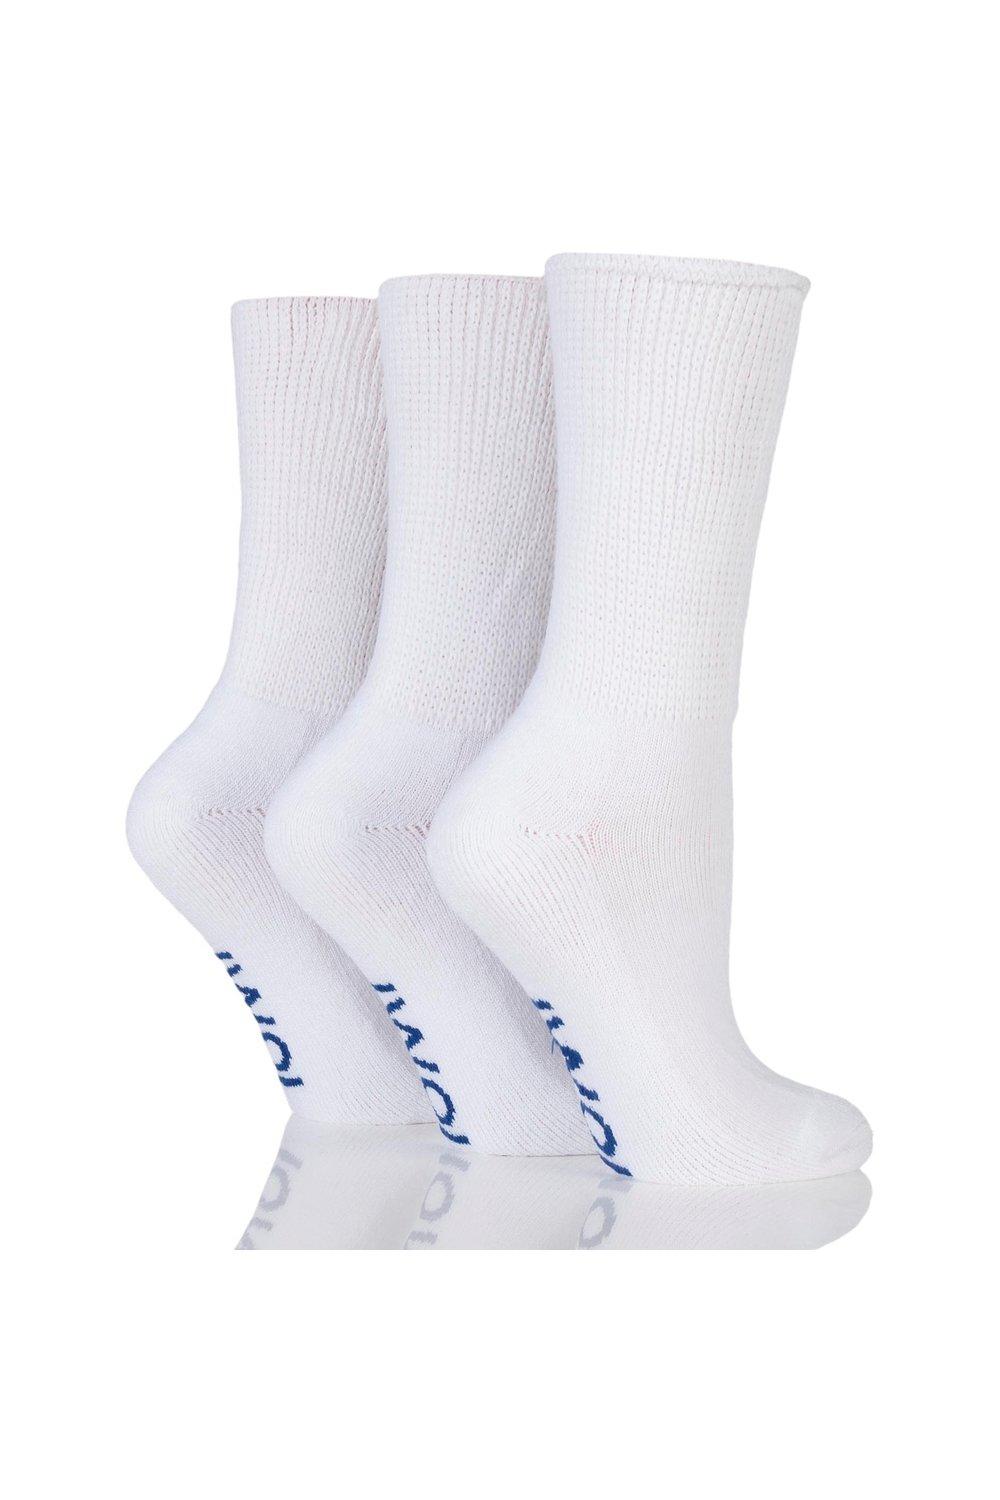 3 Pair Footnurse Gentle Grip Cushioned Foot Diabetic Socks